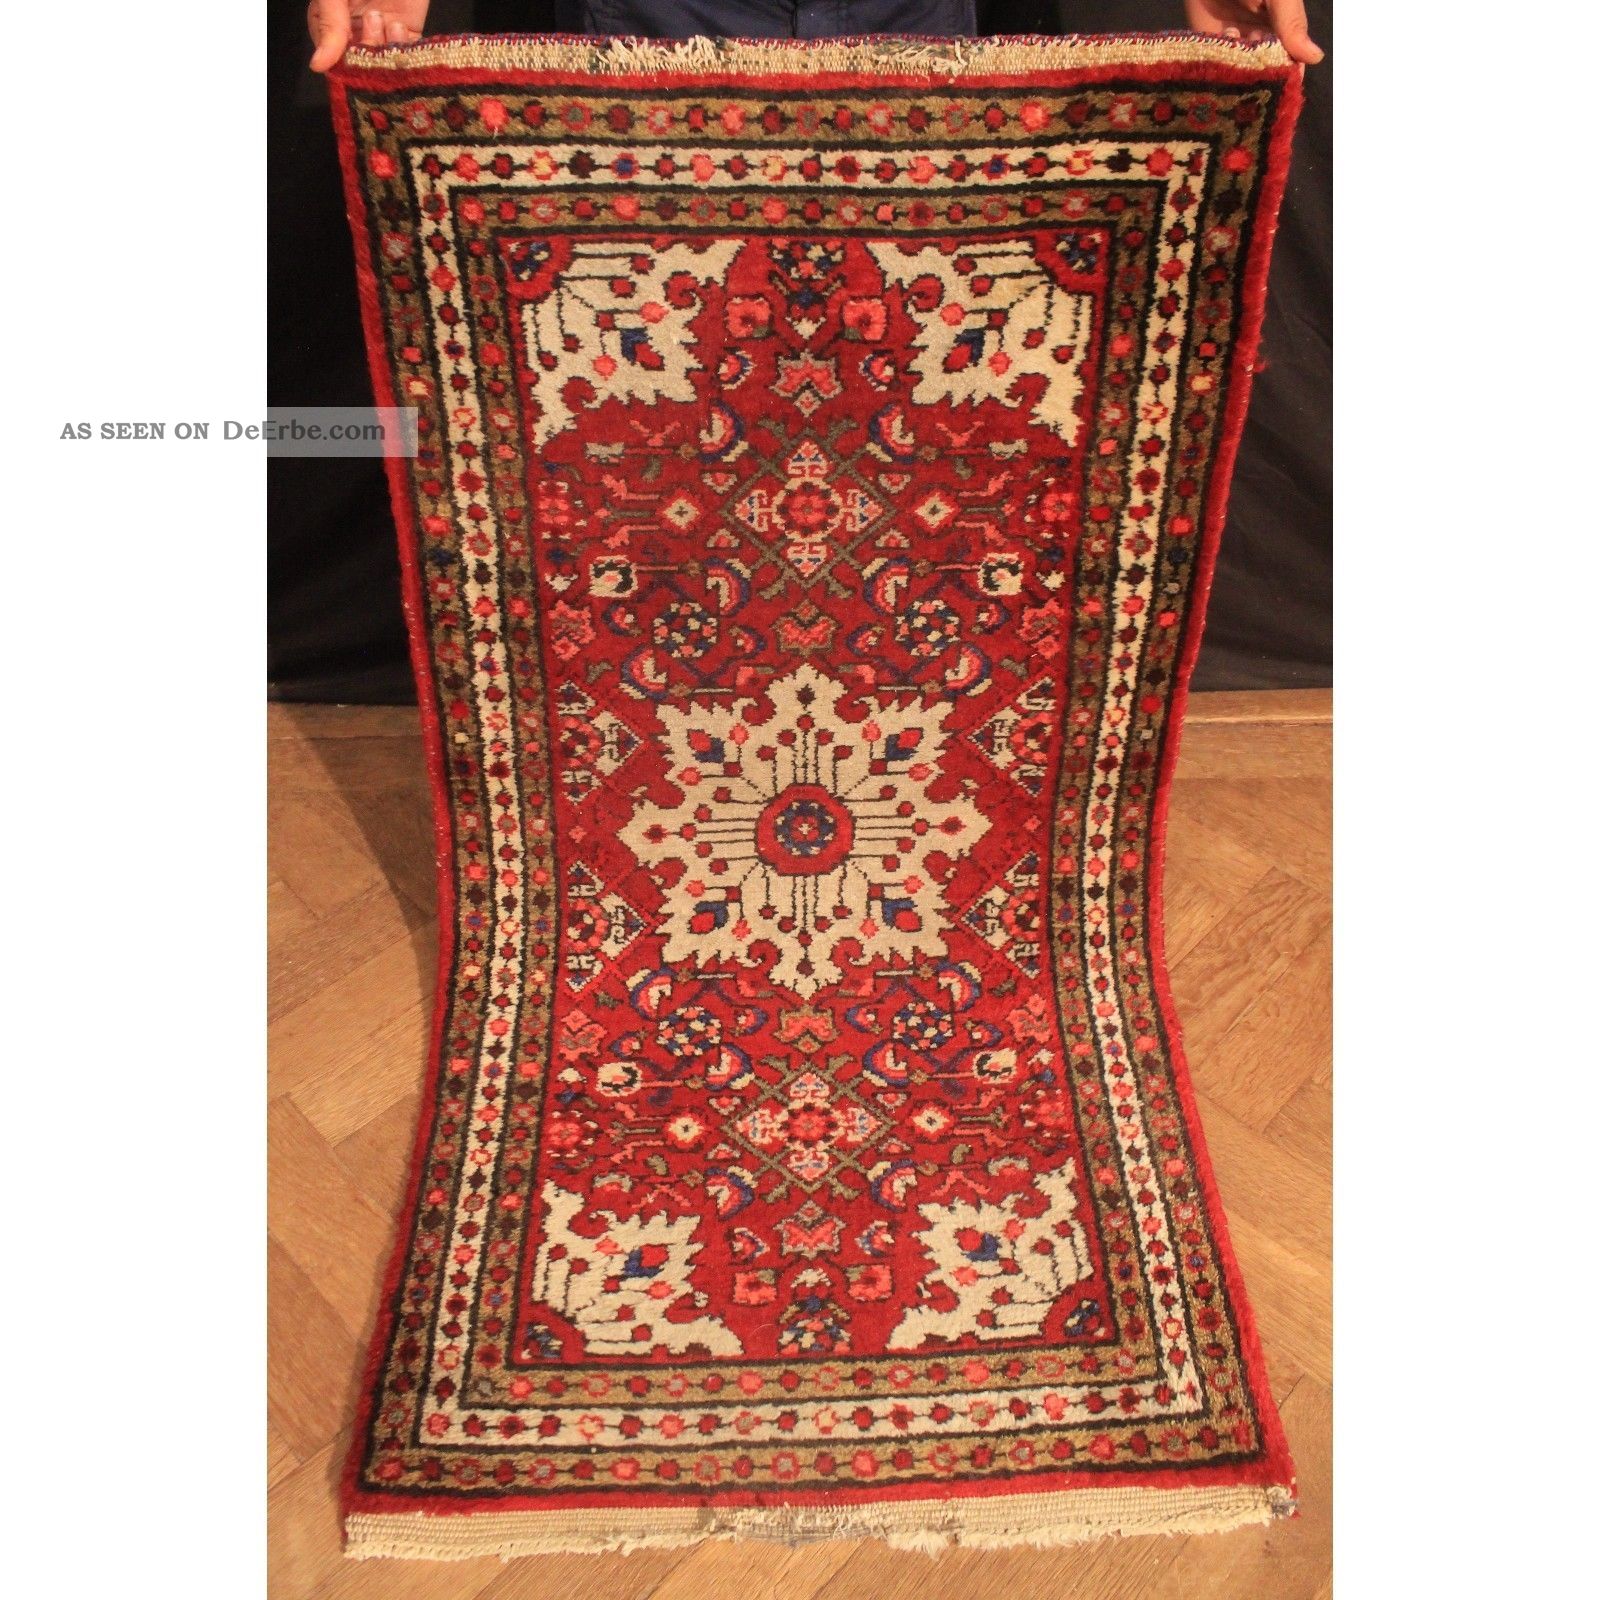 Alter Handgeknüpfter Orient Teppich Kurde Carpet Heriz Rare Old Sa Rug 135x75cm Teppiche & Flachgewebe Bild